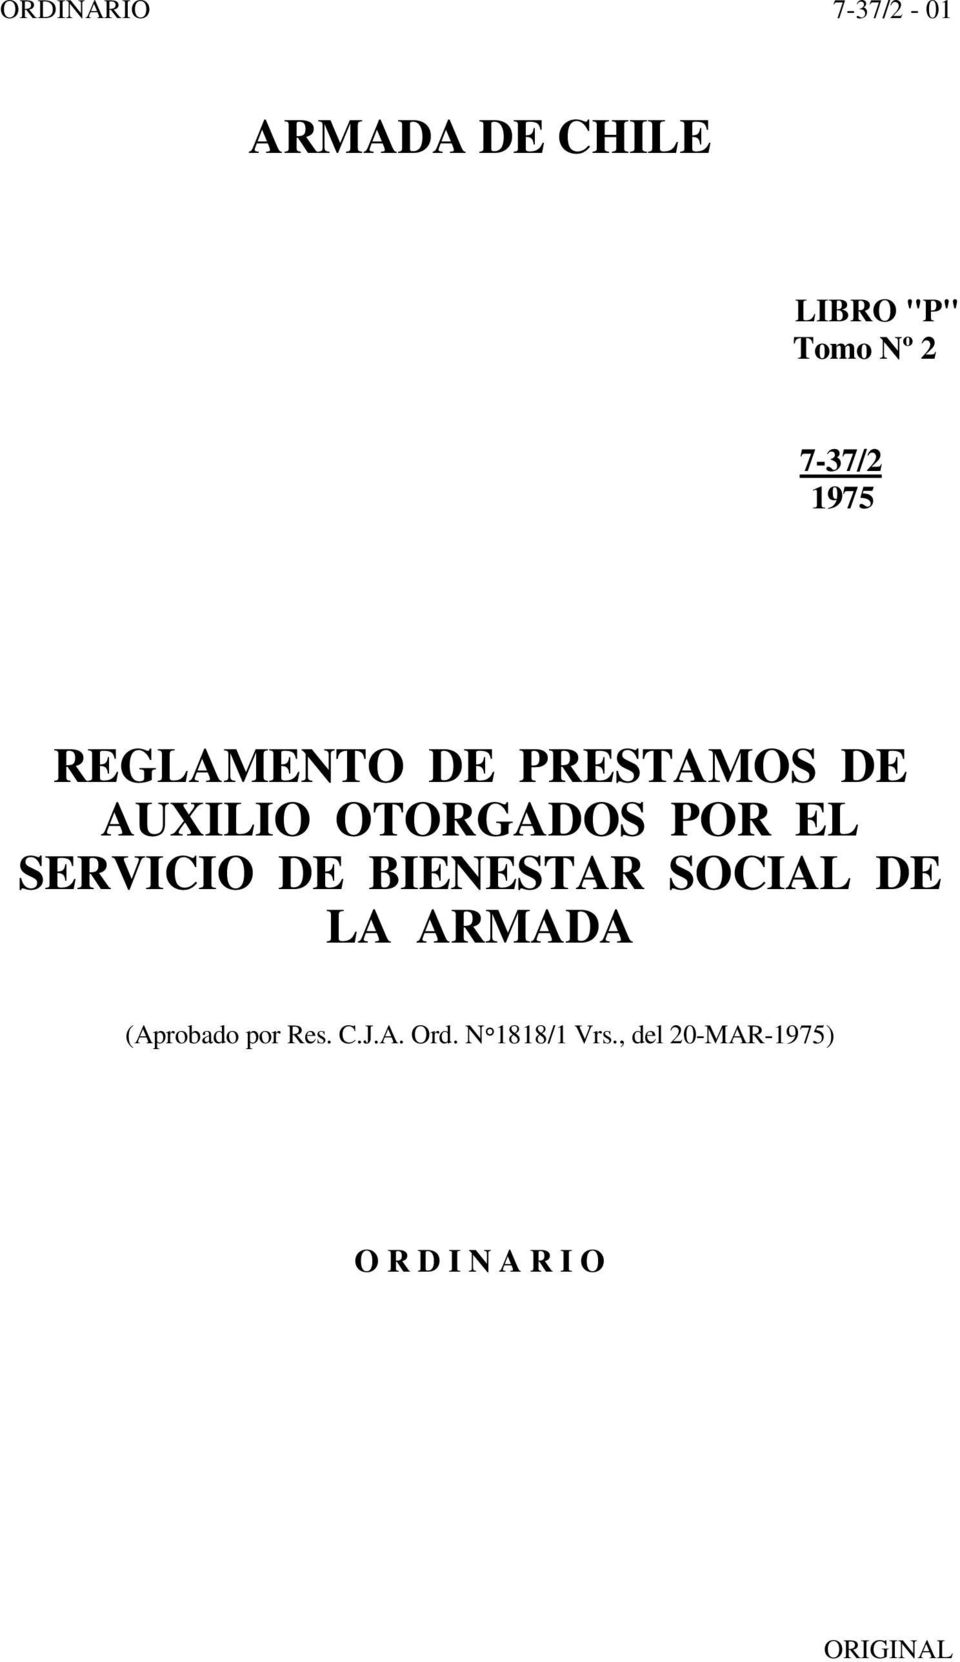 SERVICIO DE BIENESTAR SOCIAL DE LA ARMADA (Aprobado por Res. C.